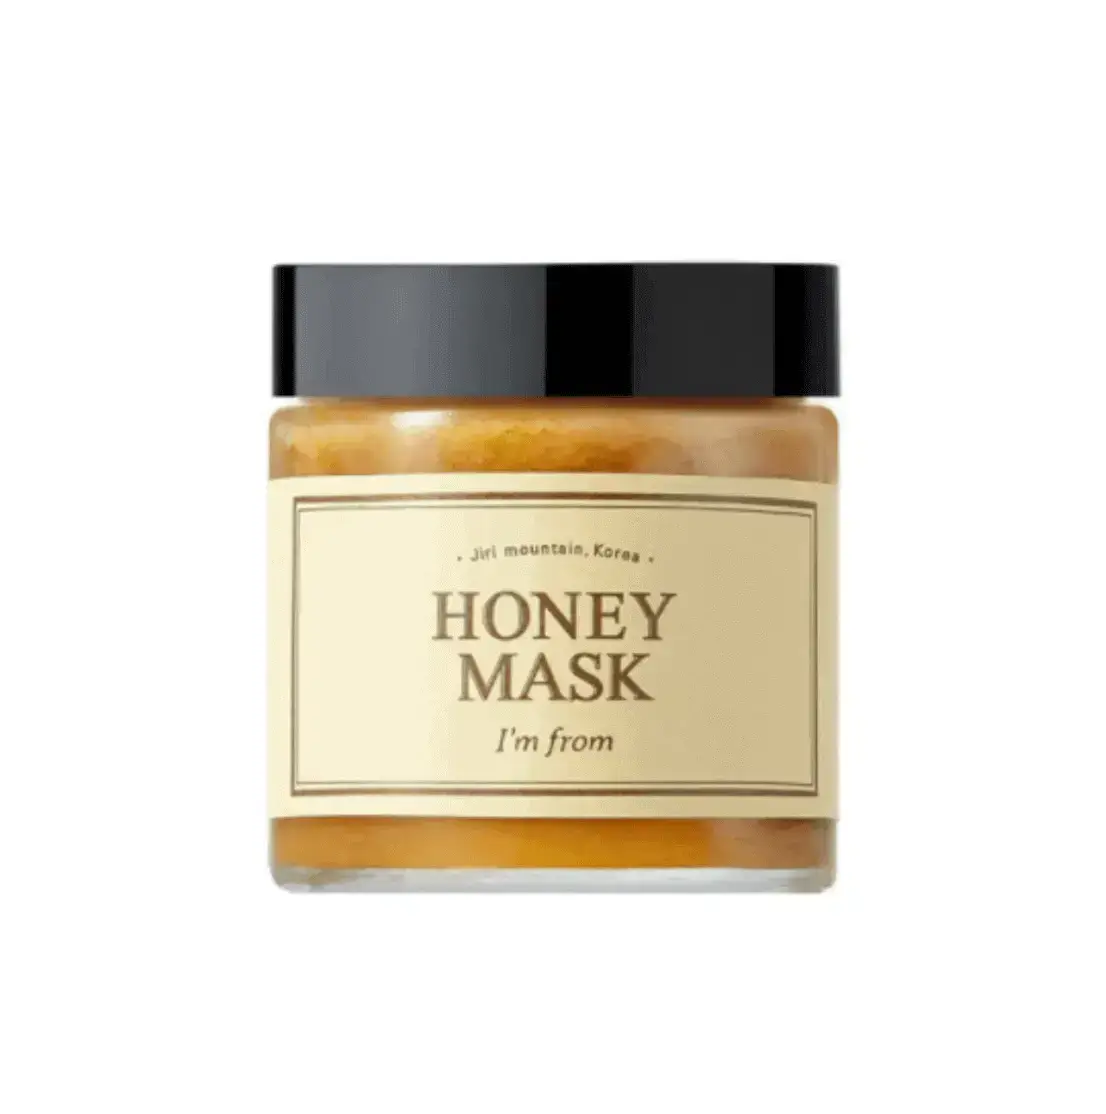 Best Korean Skincare Masks- IMFROM Honey mask